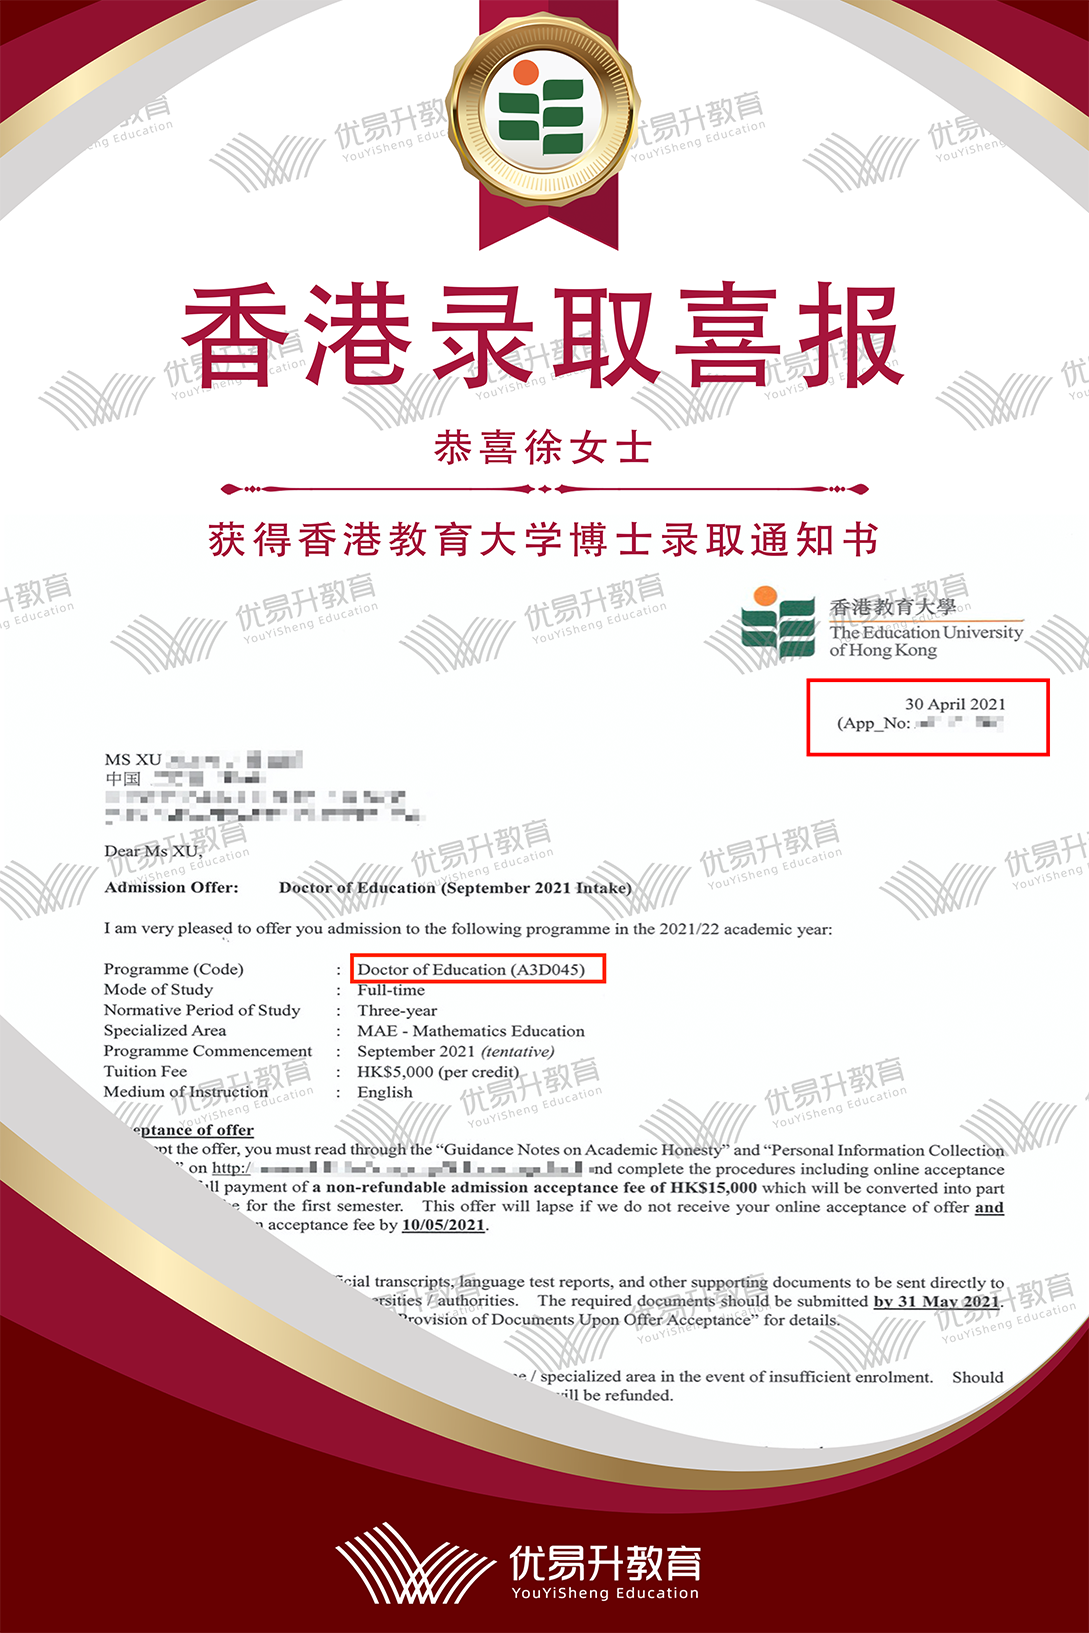 恭喜X同学获得香港教育大学博士录取通知书.png